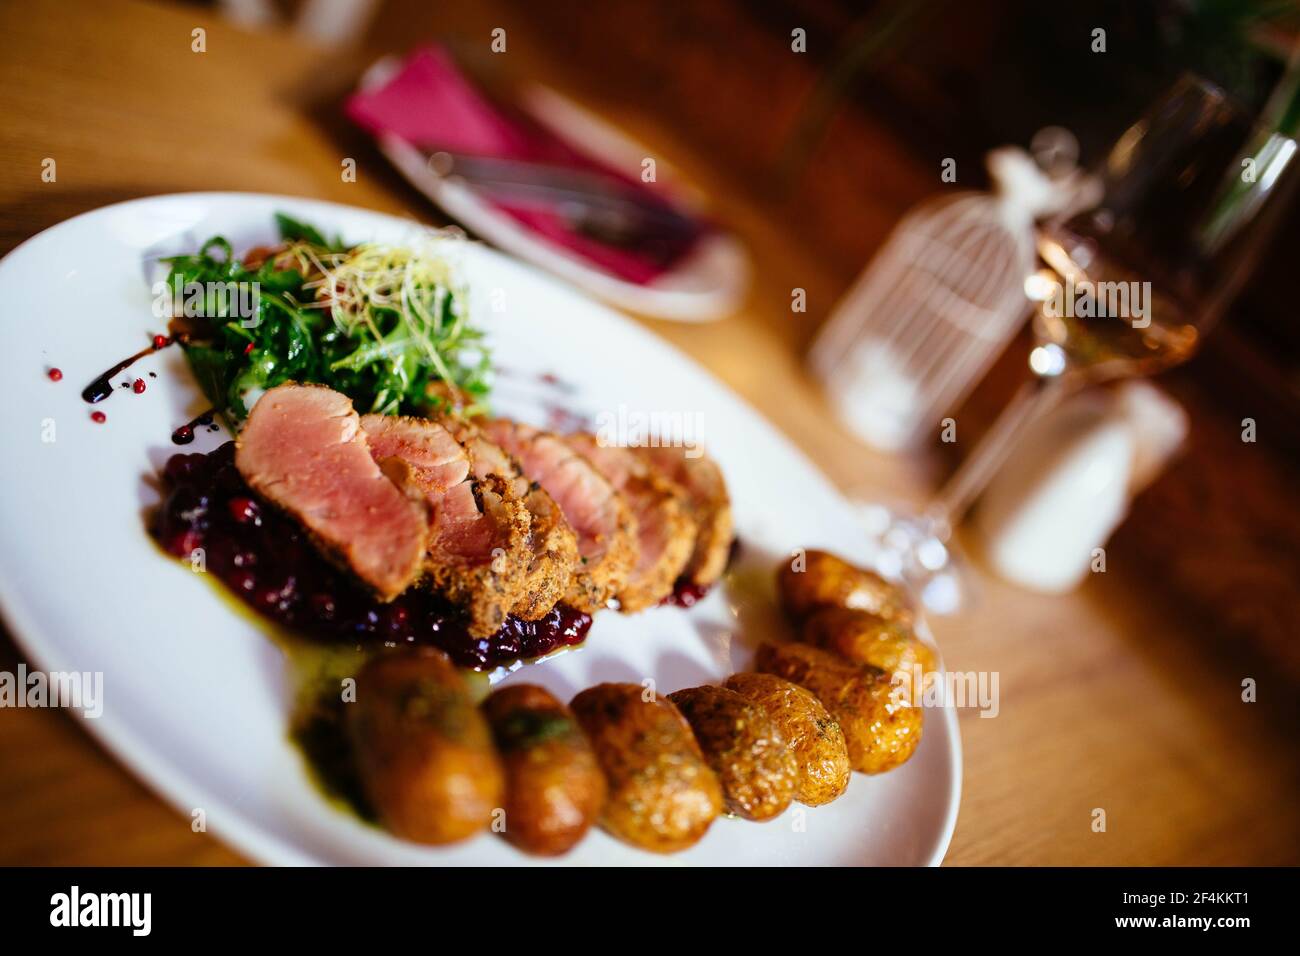 Filetto di maiale con patate grenaille e insalata fresca in ambiente ristorante di lusso, posate e bicchiere di vino Foto Stock